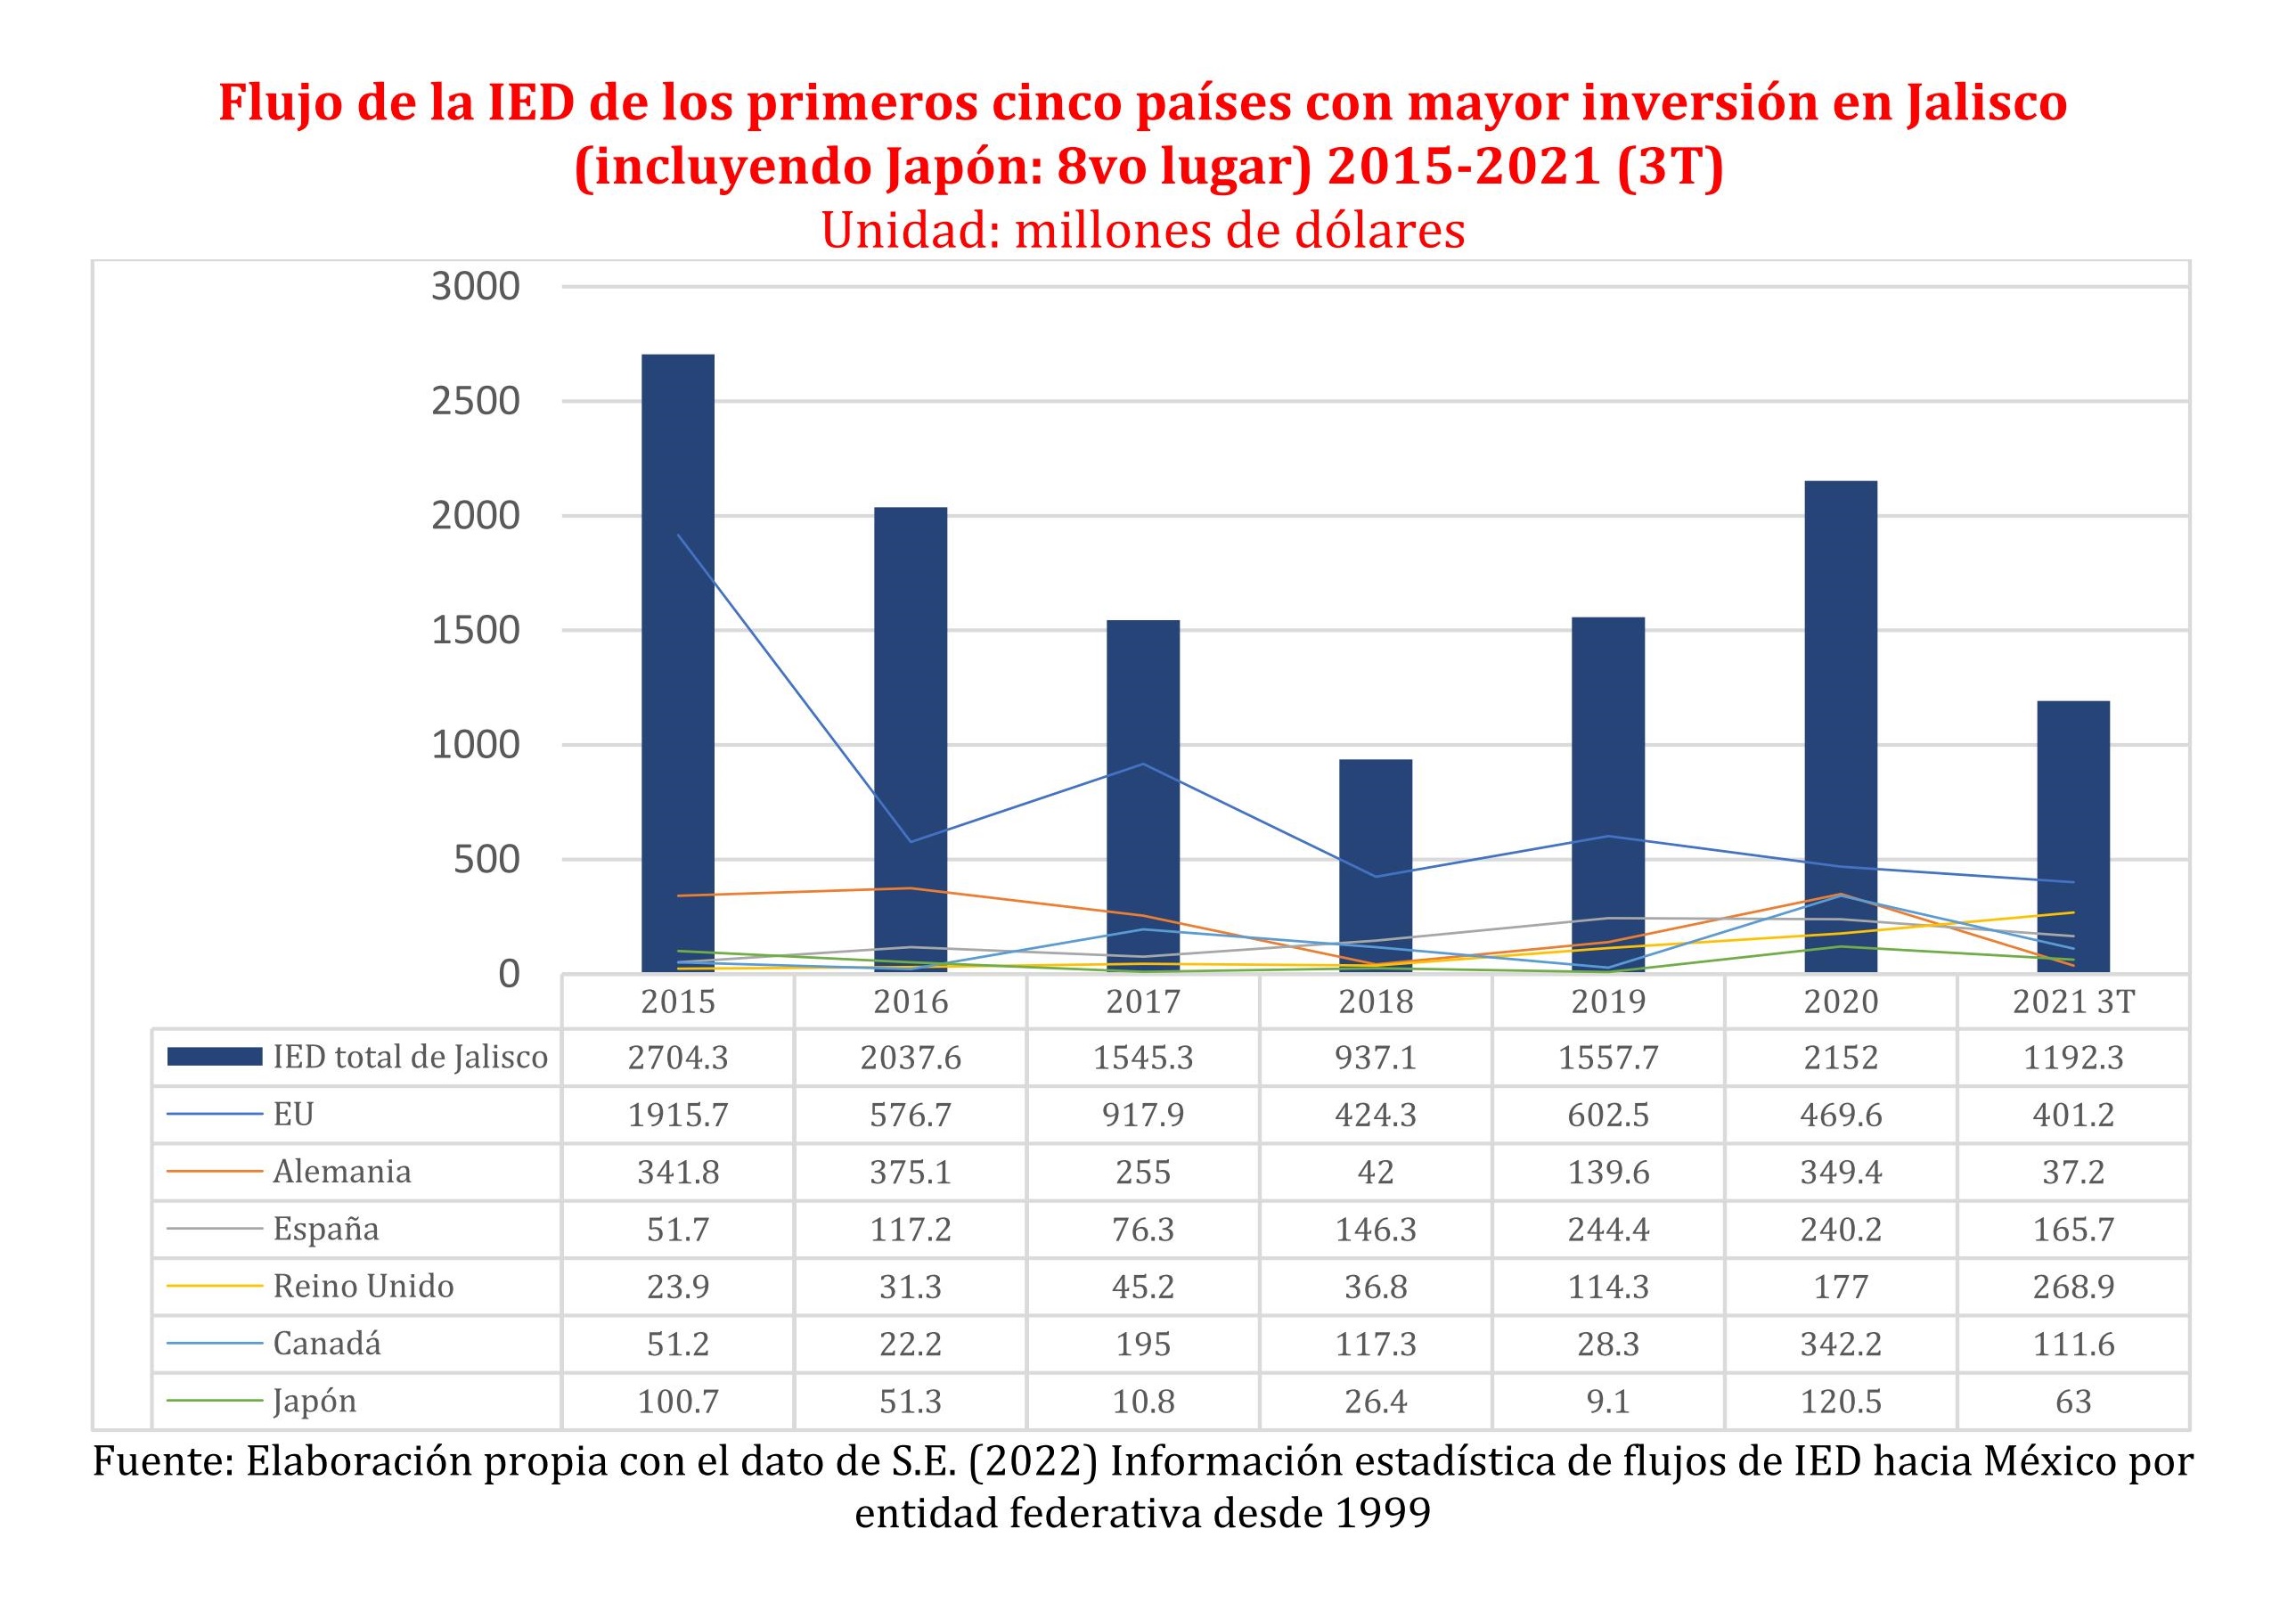 Flujo de la IED de los primeros cincos países con mayor inversión en Jalisco